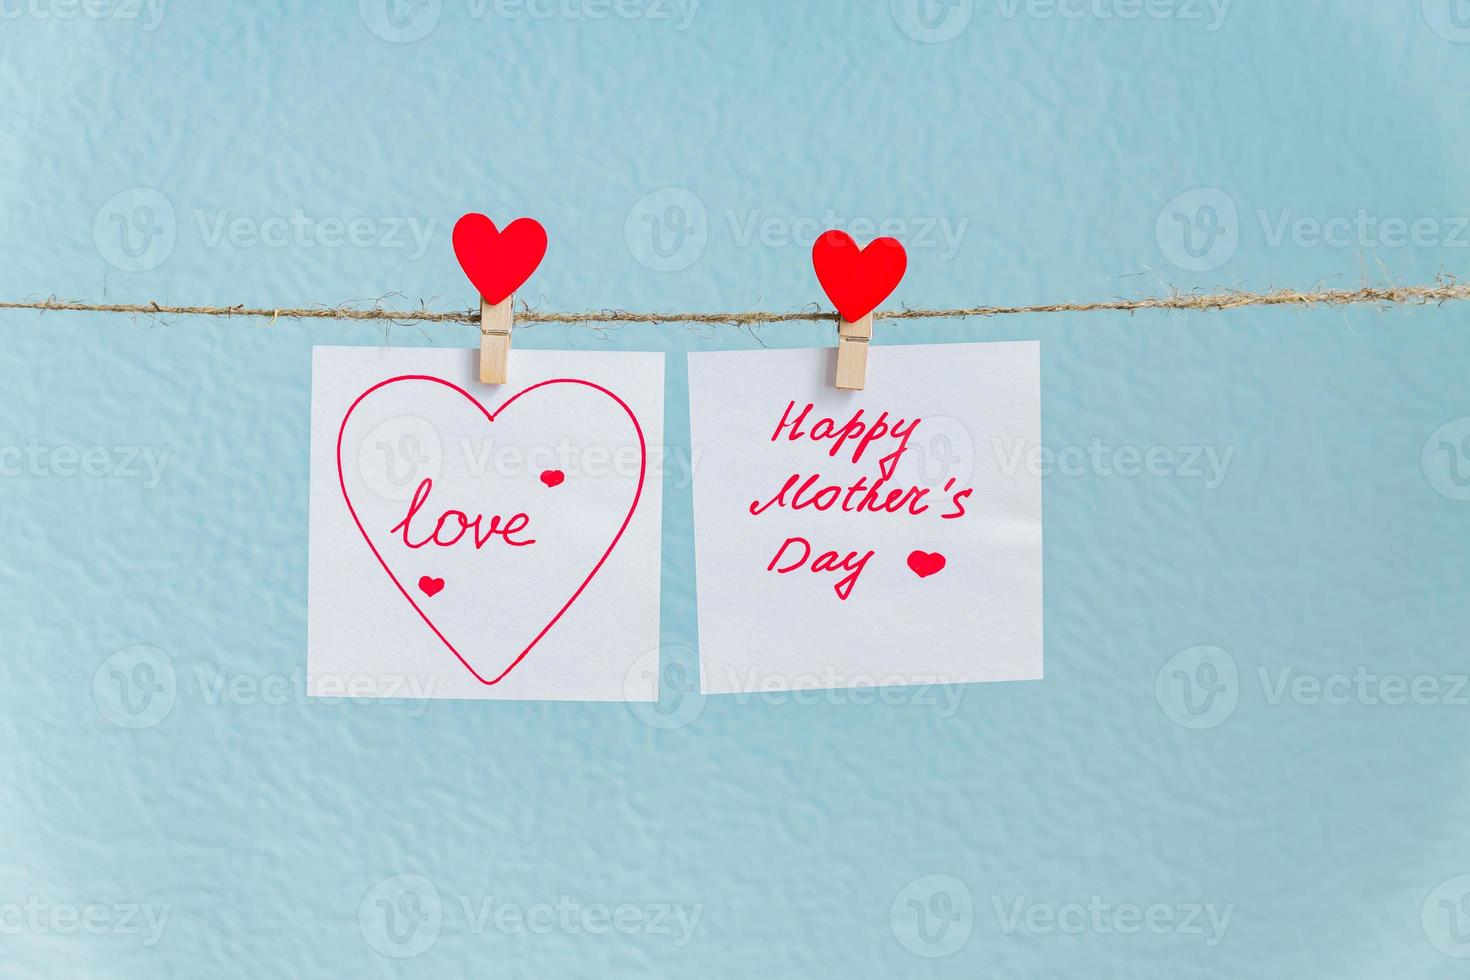 röda kärlekshjärtan stift hängande på naturlig sladd mot blå bakgrund. glad mors dag inskription på pappersbit. foto